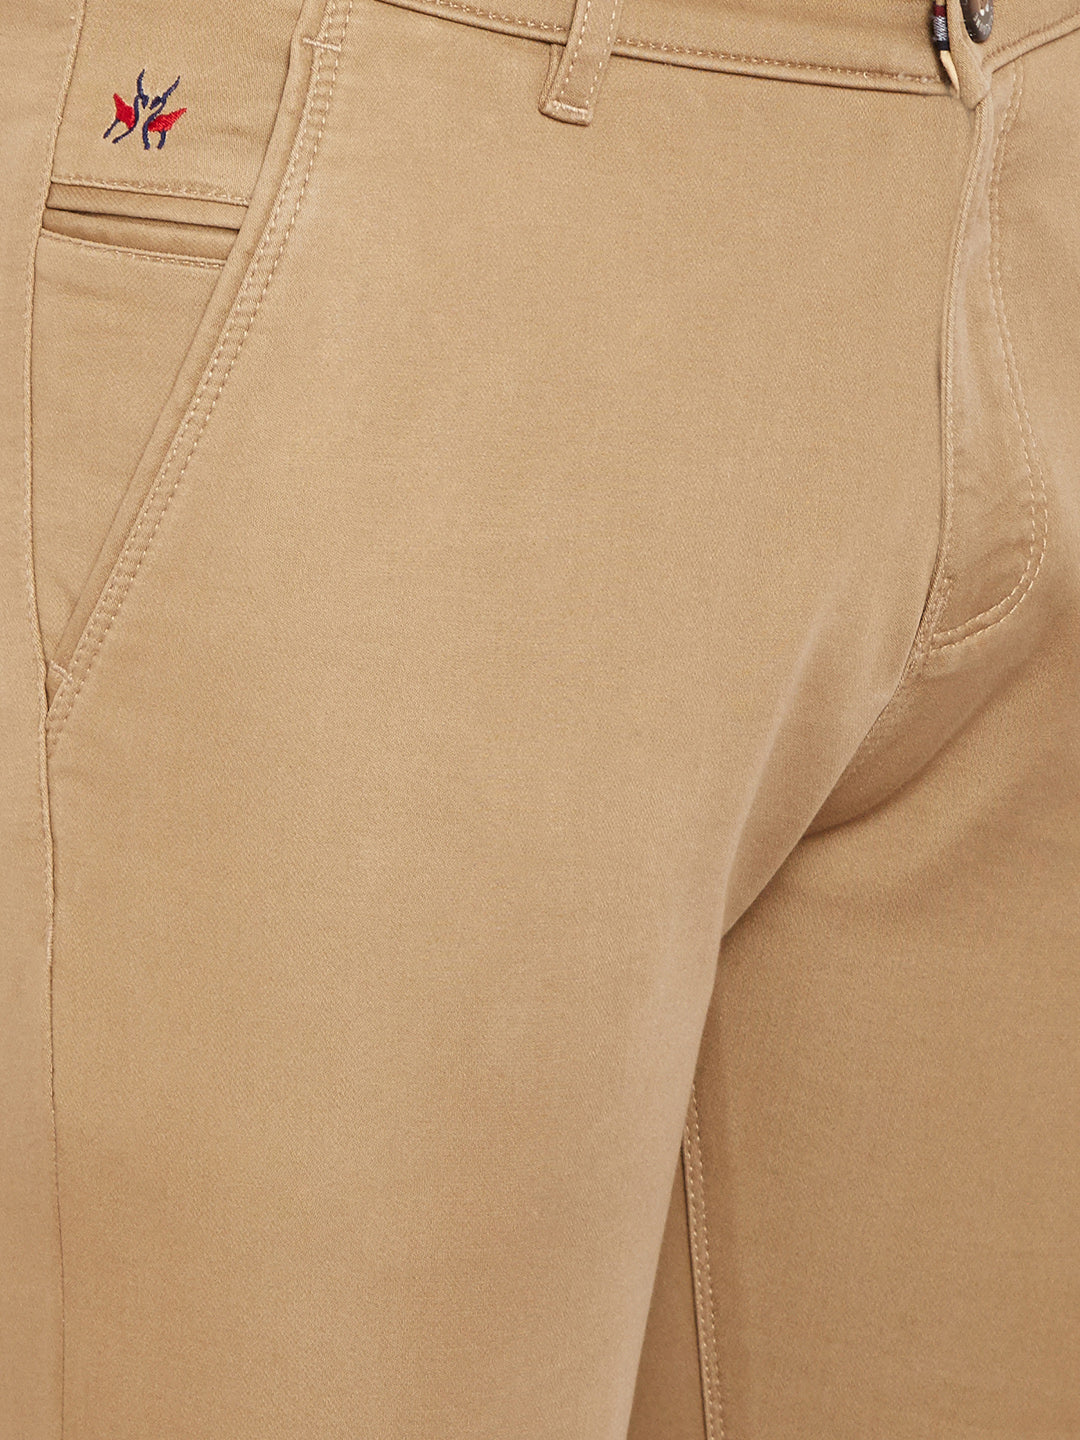 Beige Slim Fit Trousers - Men Trousers